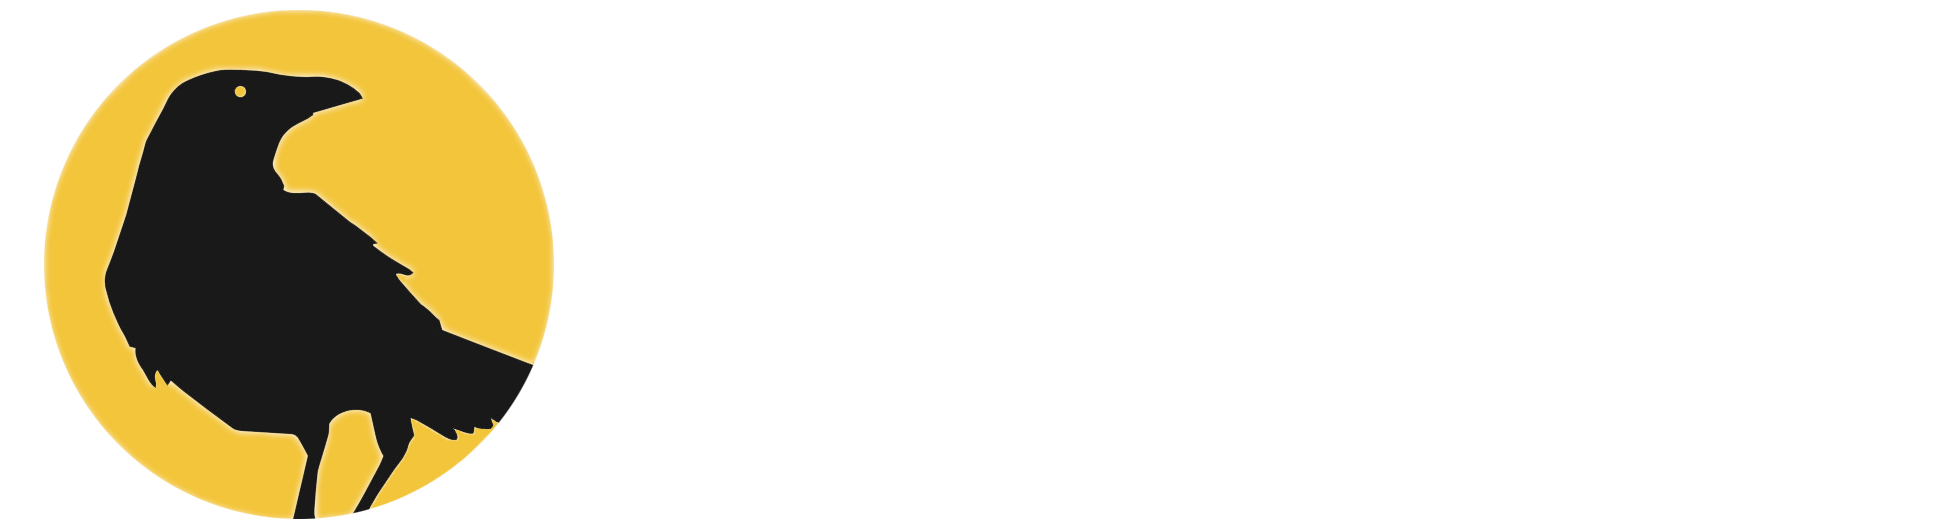 Курсы татуировки в Санкт-Петербурге. Индивидуальное обучение тату. Цена. Отзывы